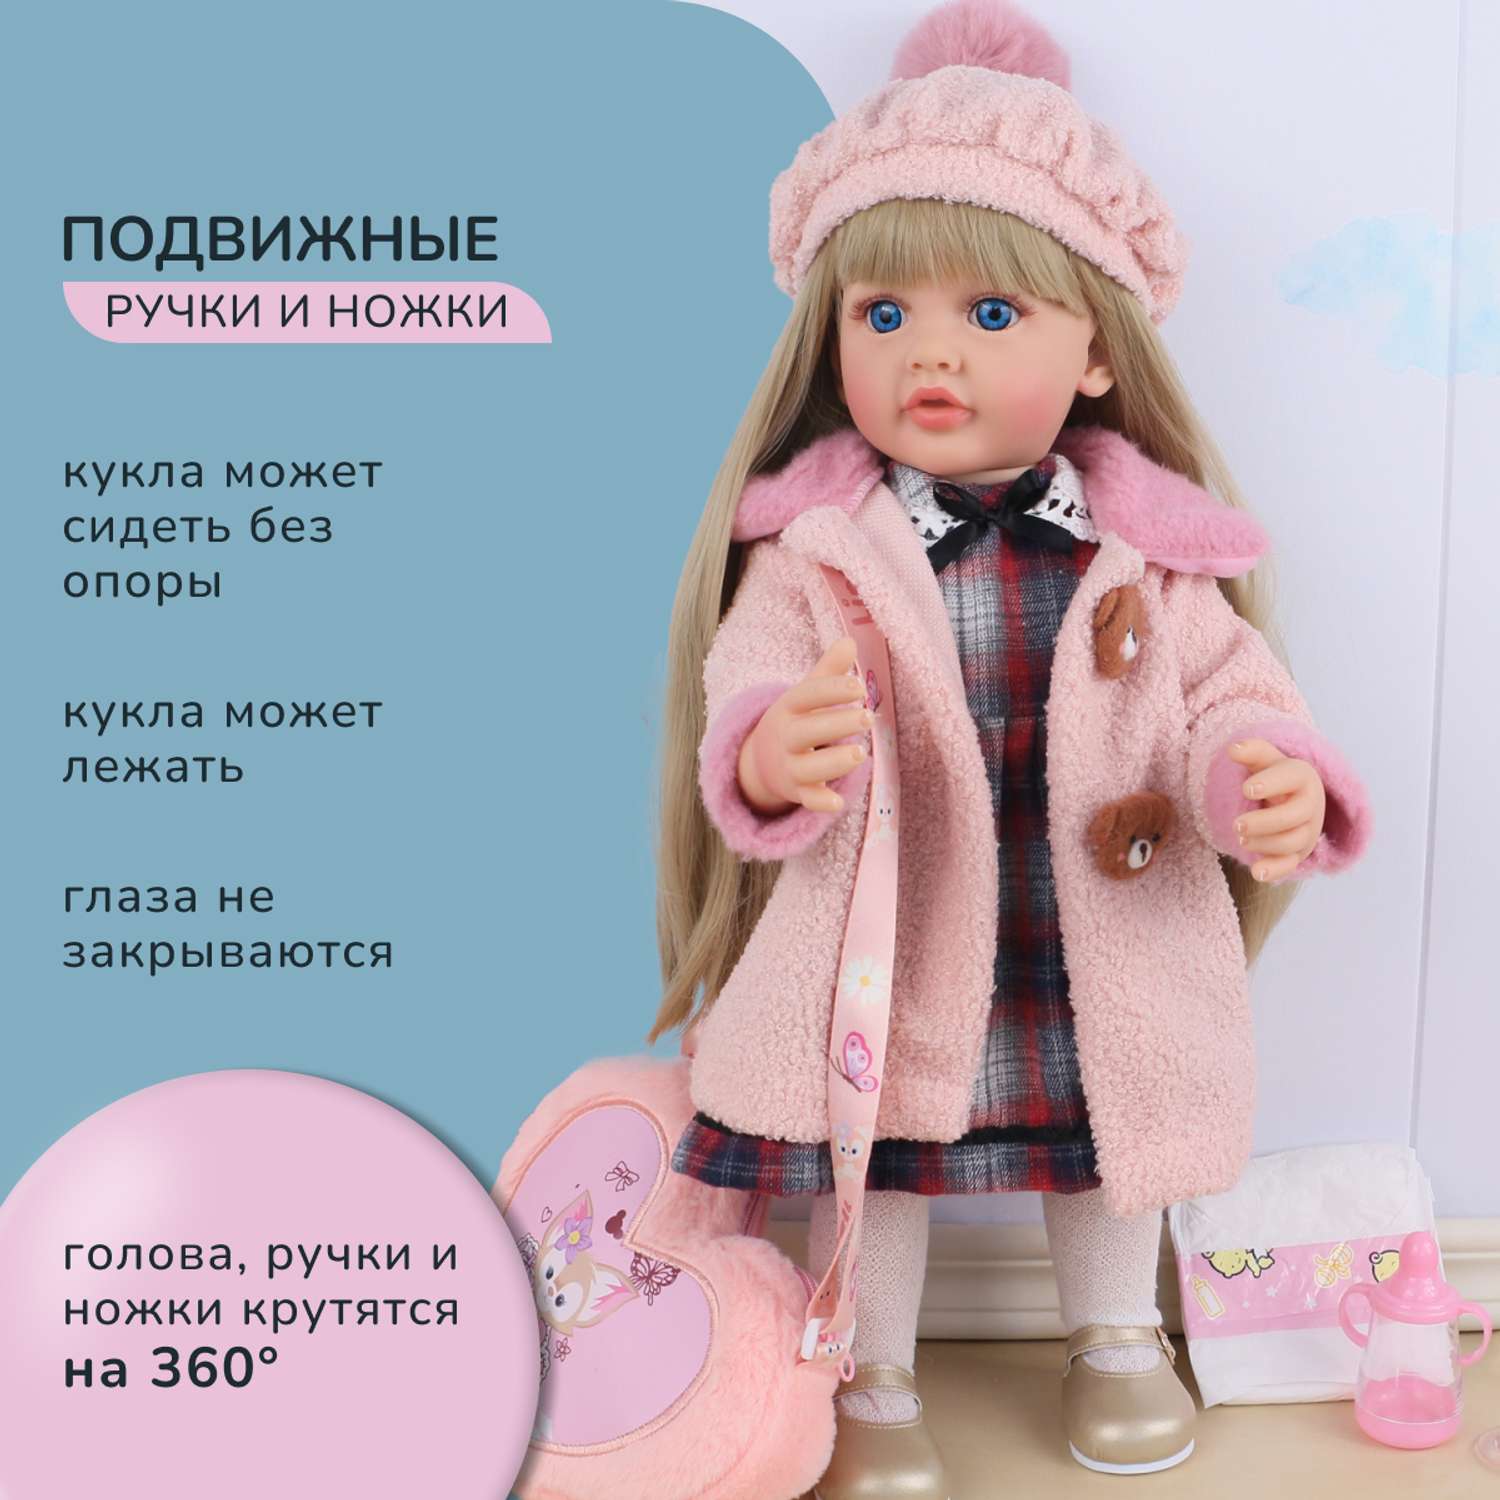 Кукла Реборн QA BABY Марианна большая пупс набор игрушки для девочки 55 см 5553 - фото 3